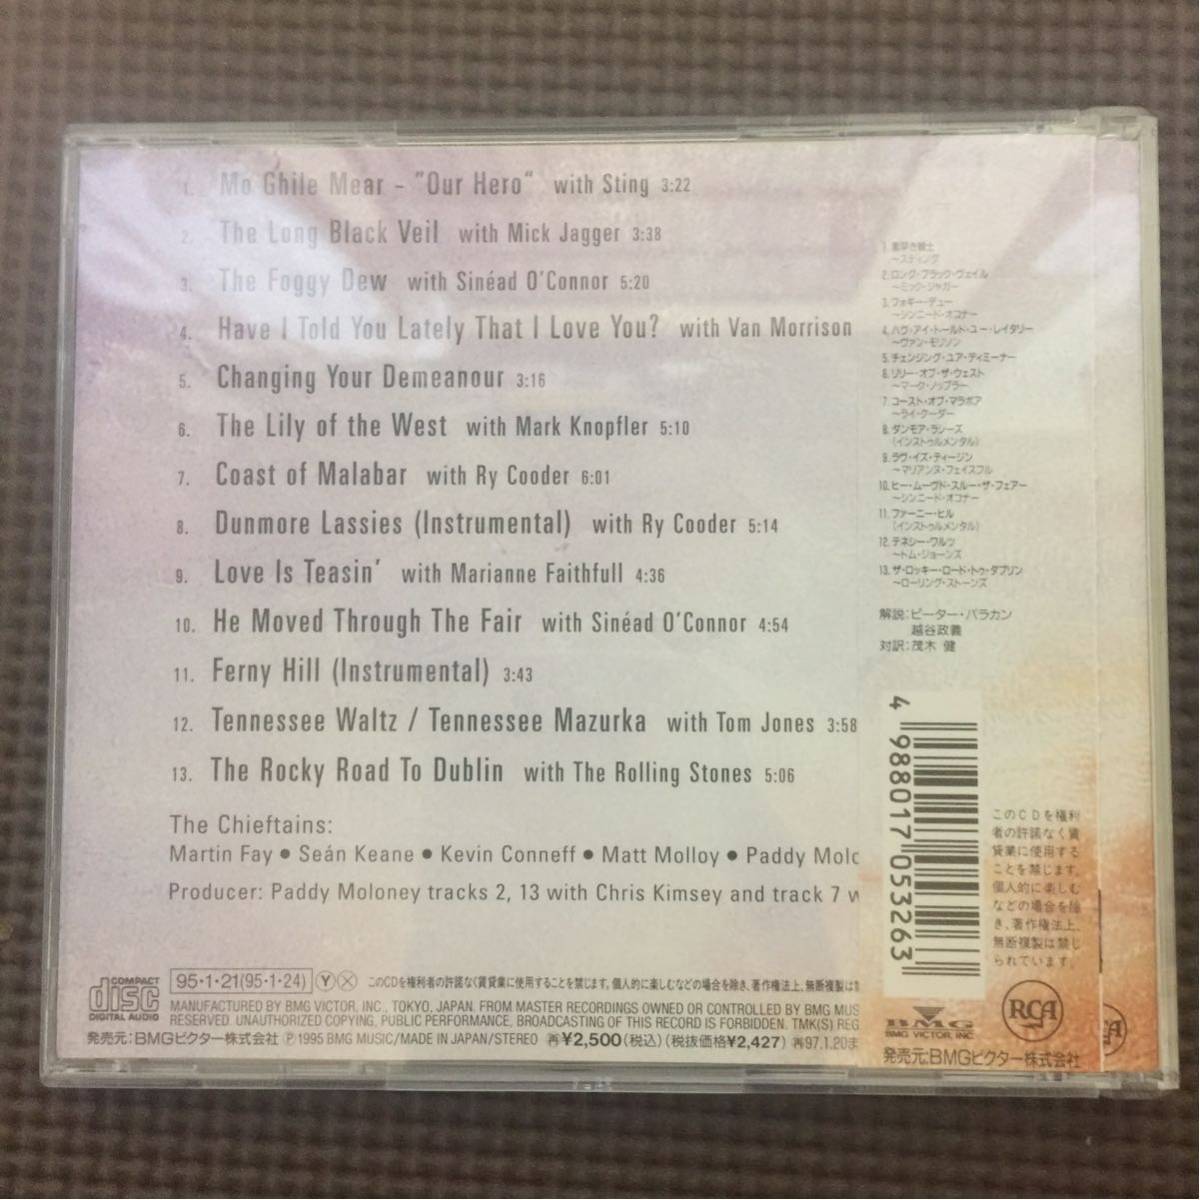 ザ・チーフタンズ ロング・ブラック・ヴェイル 国内盤 CD